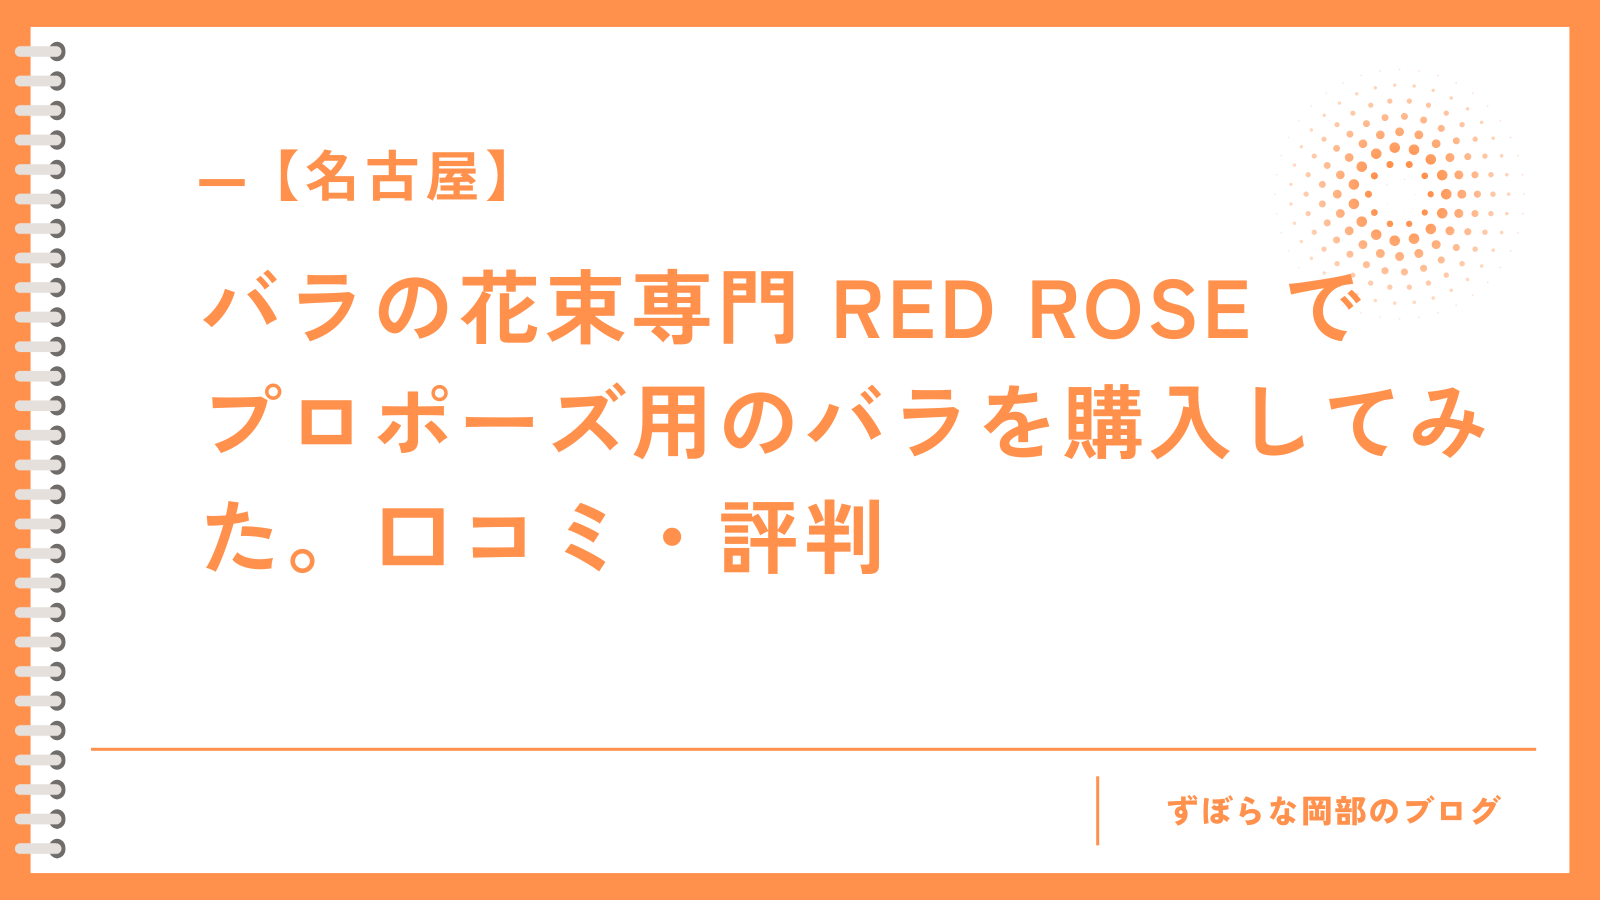 【名古屋】バラの花束専門 RED ROSE でプロポーズ用のバラを購入してみた。口コミ・評判